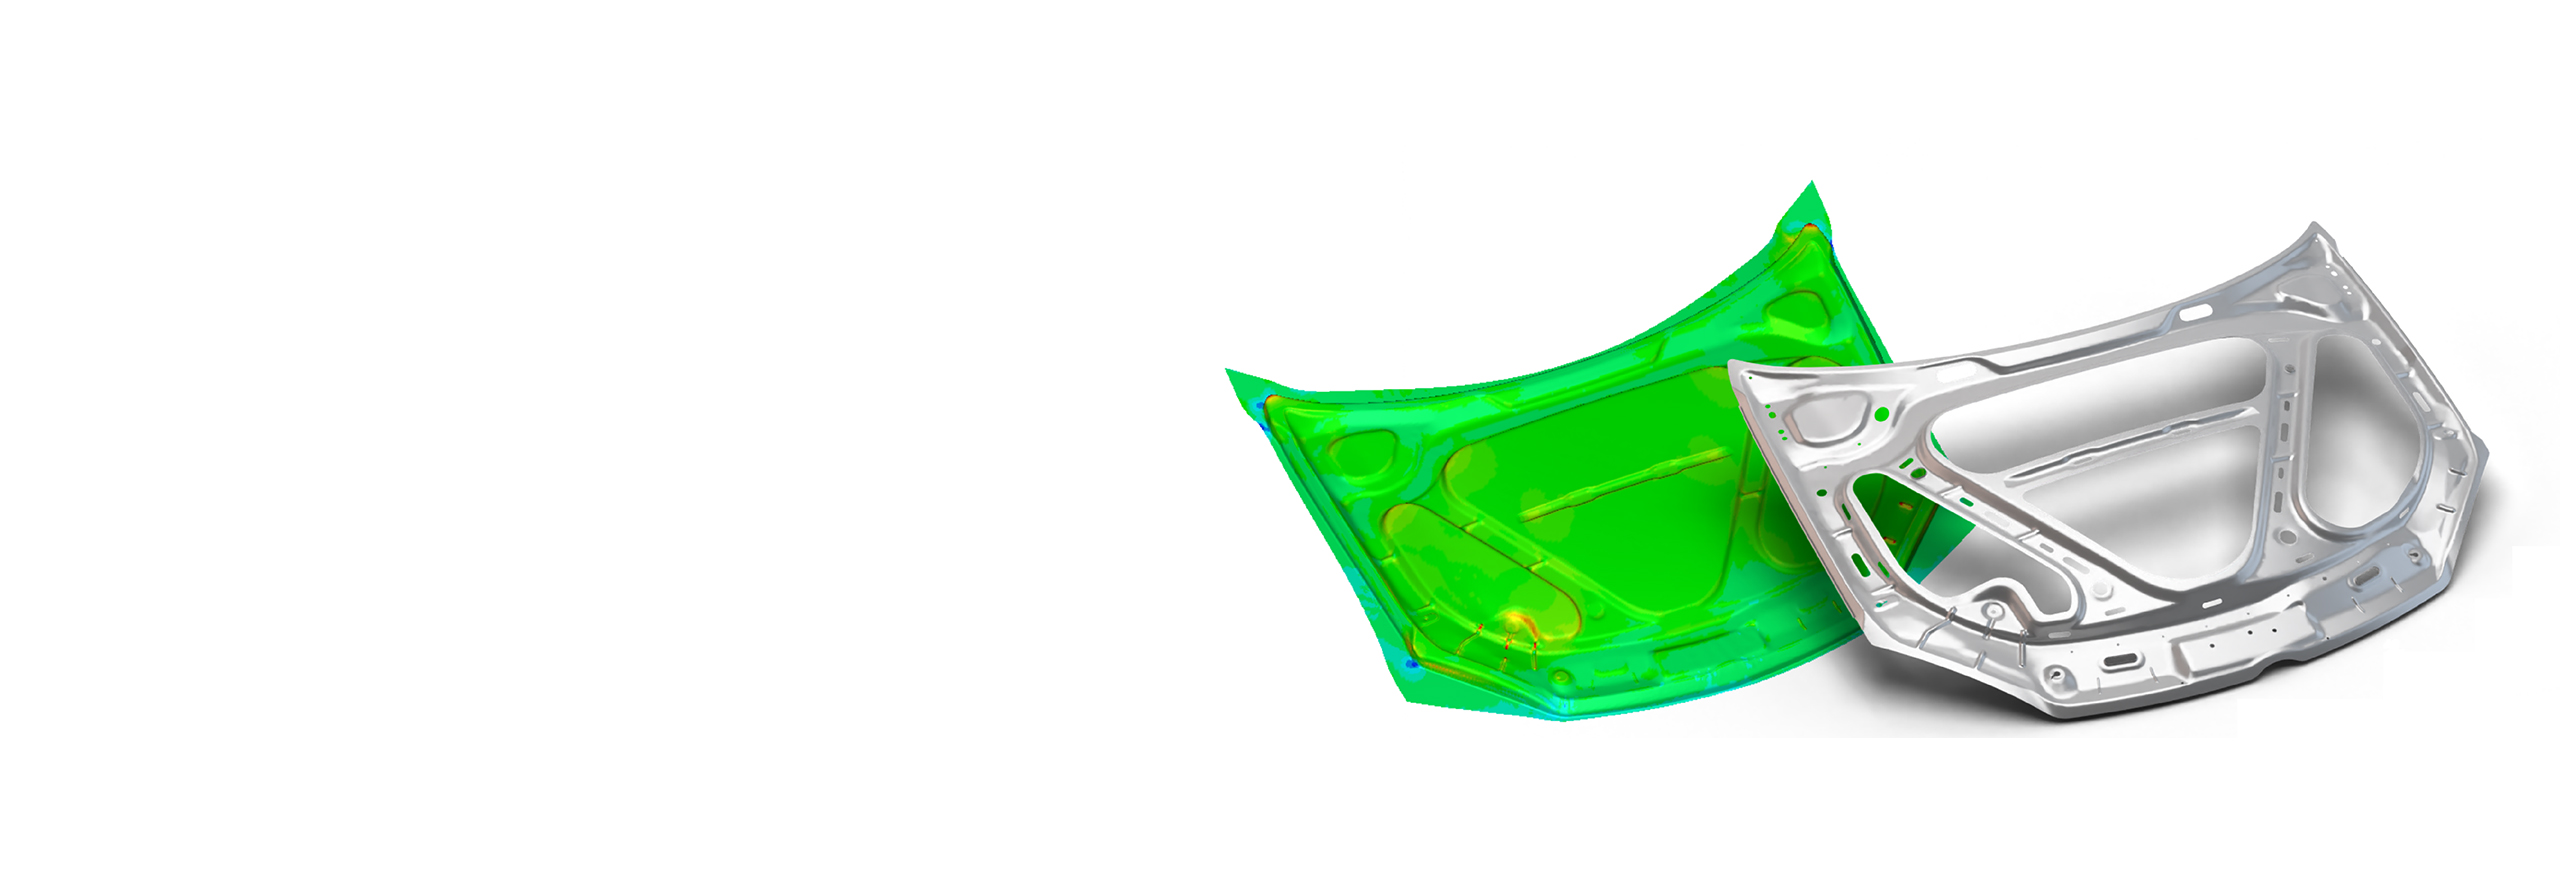 차량 부품의 FTI FASTIncremental 판금 분석 소프트웨어 시뮬레이션